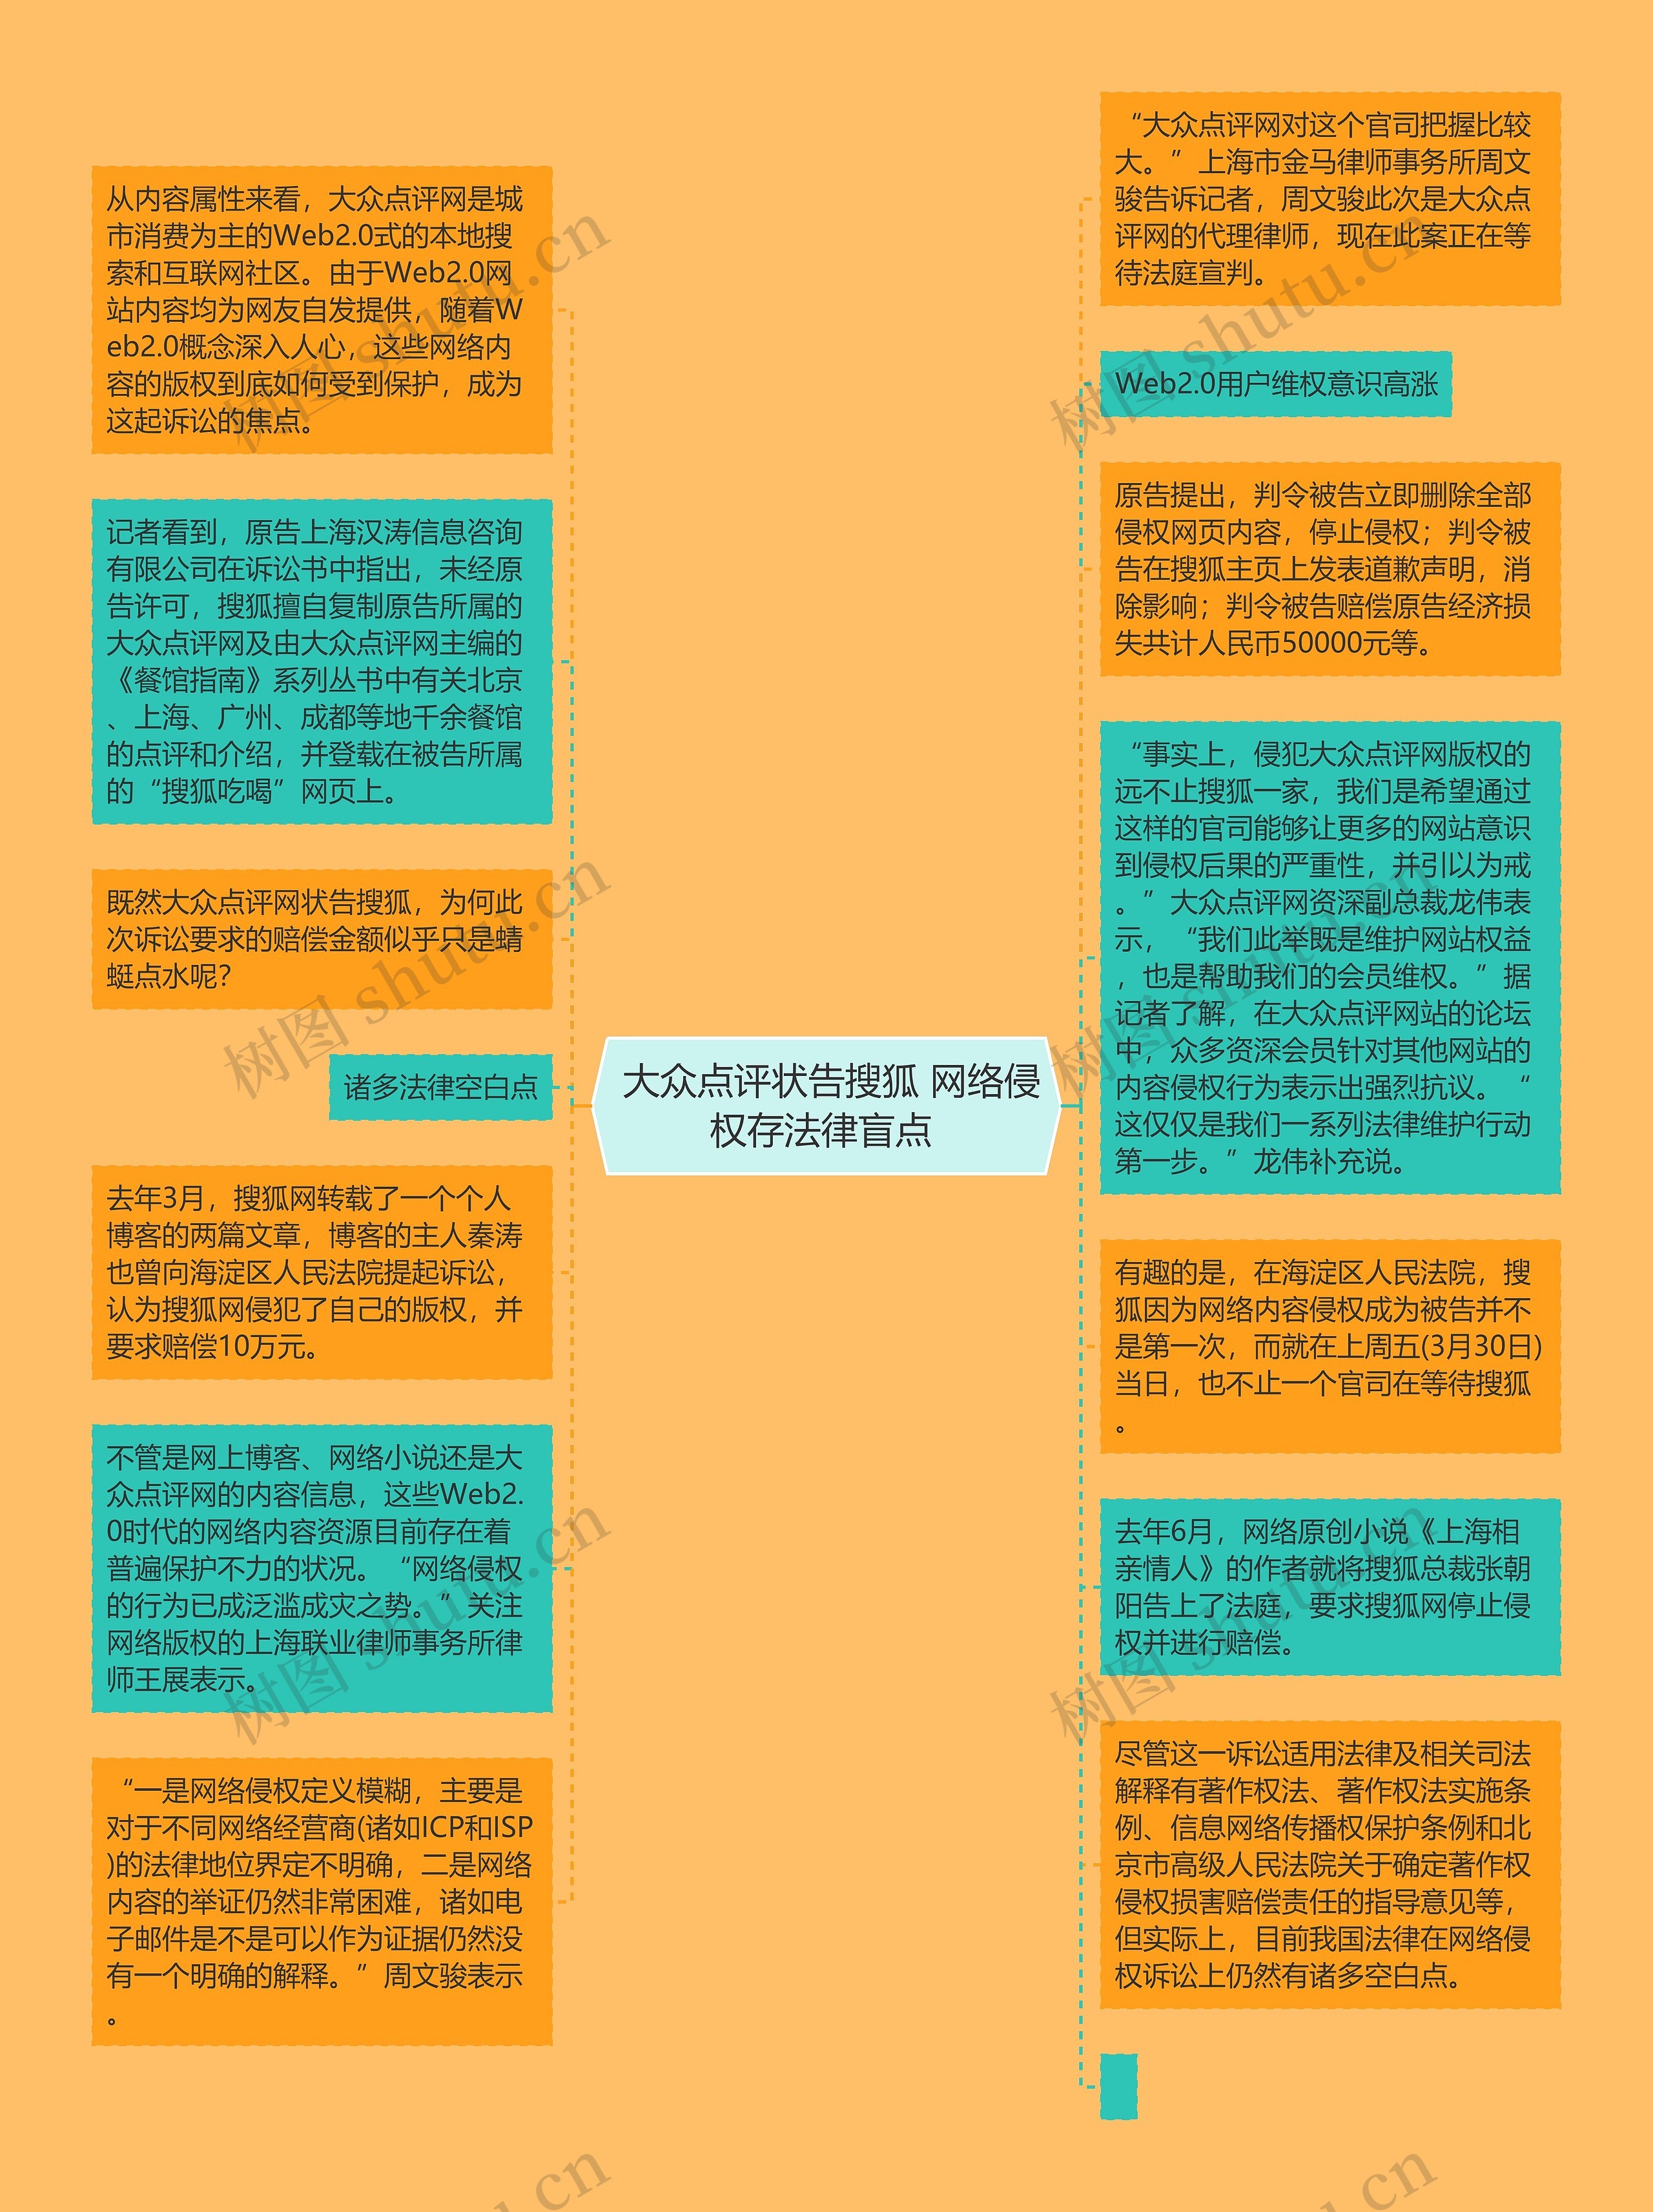  大众点评状告搜狐 网络侵权存法律盲点 